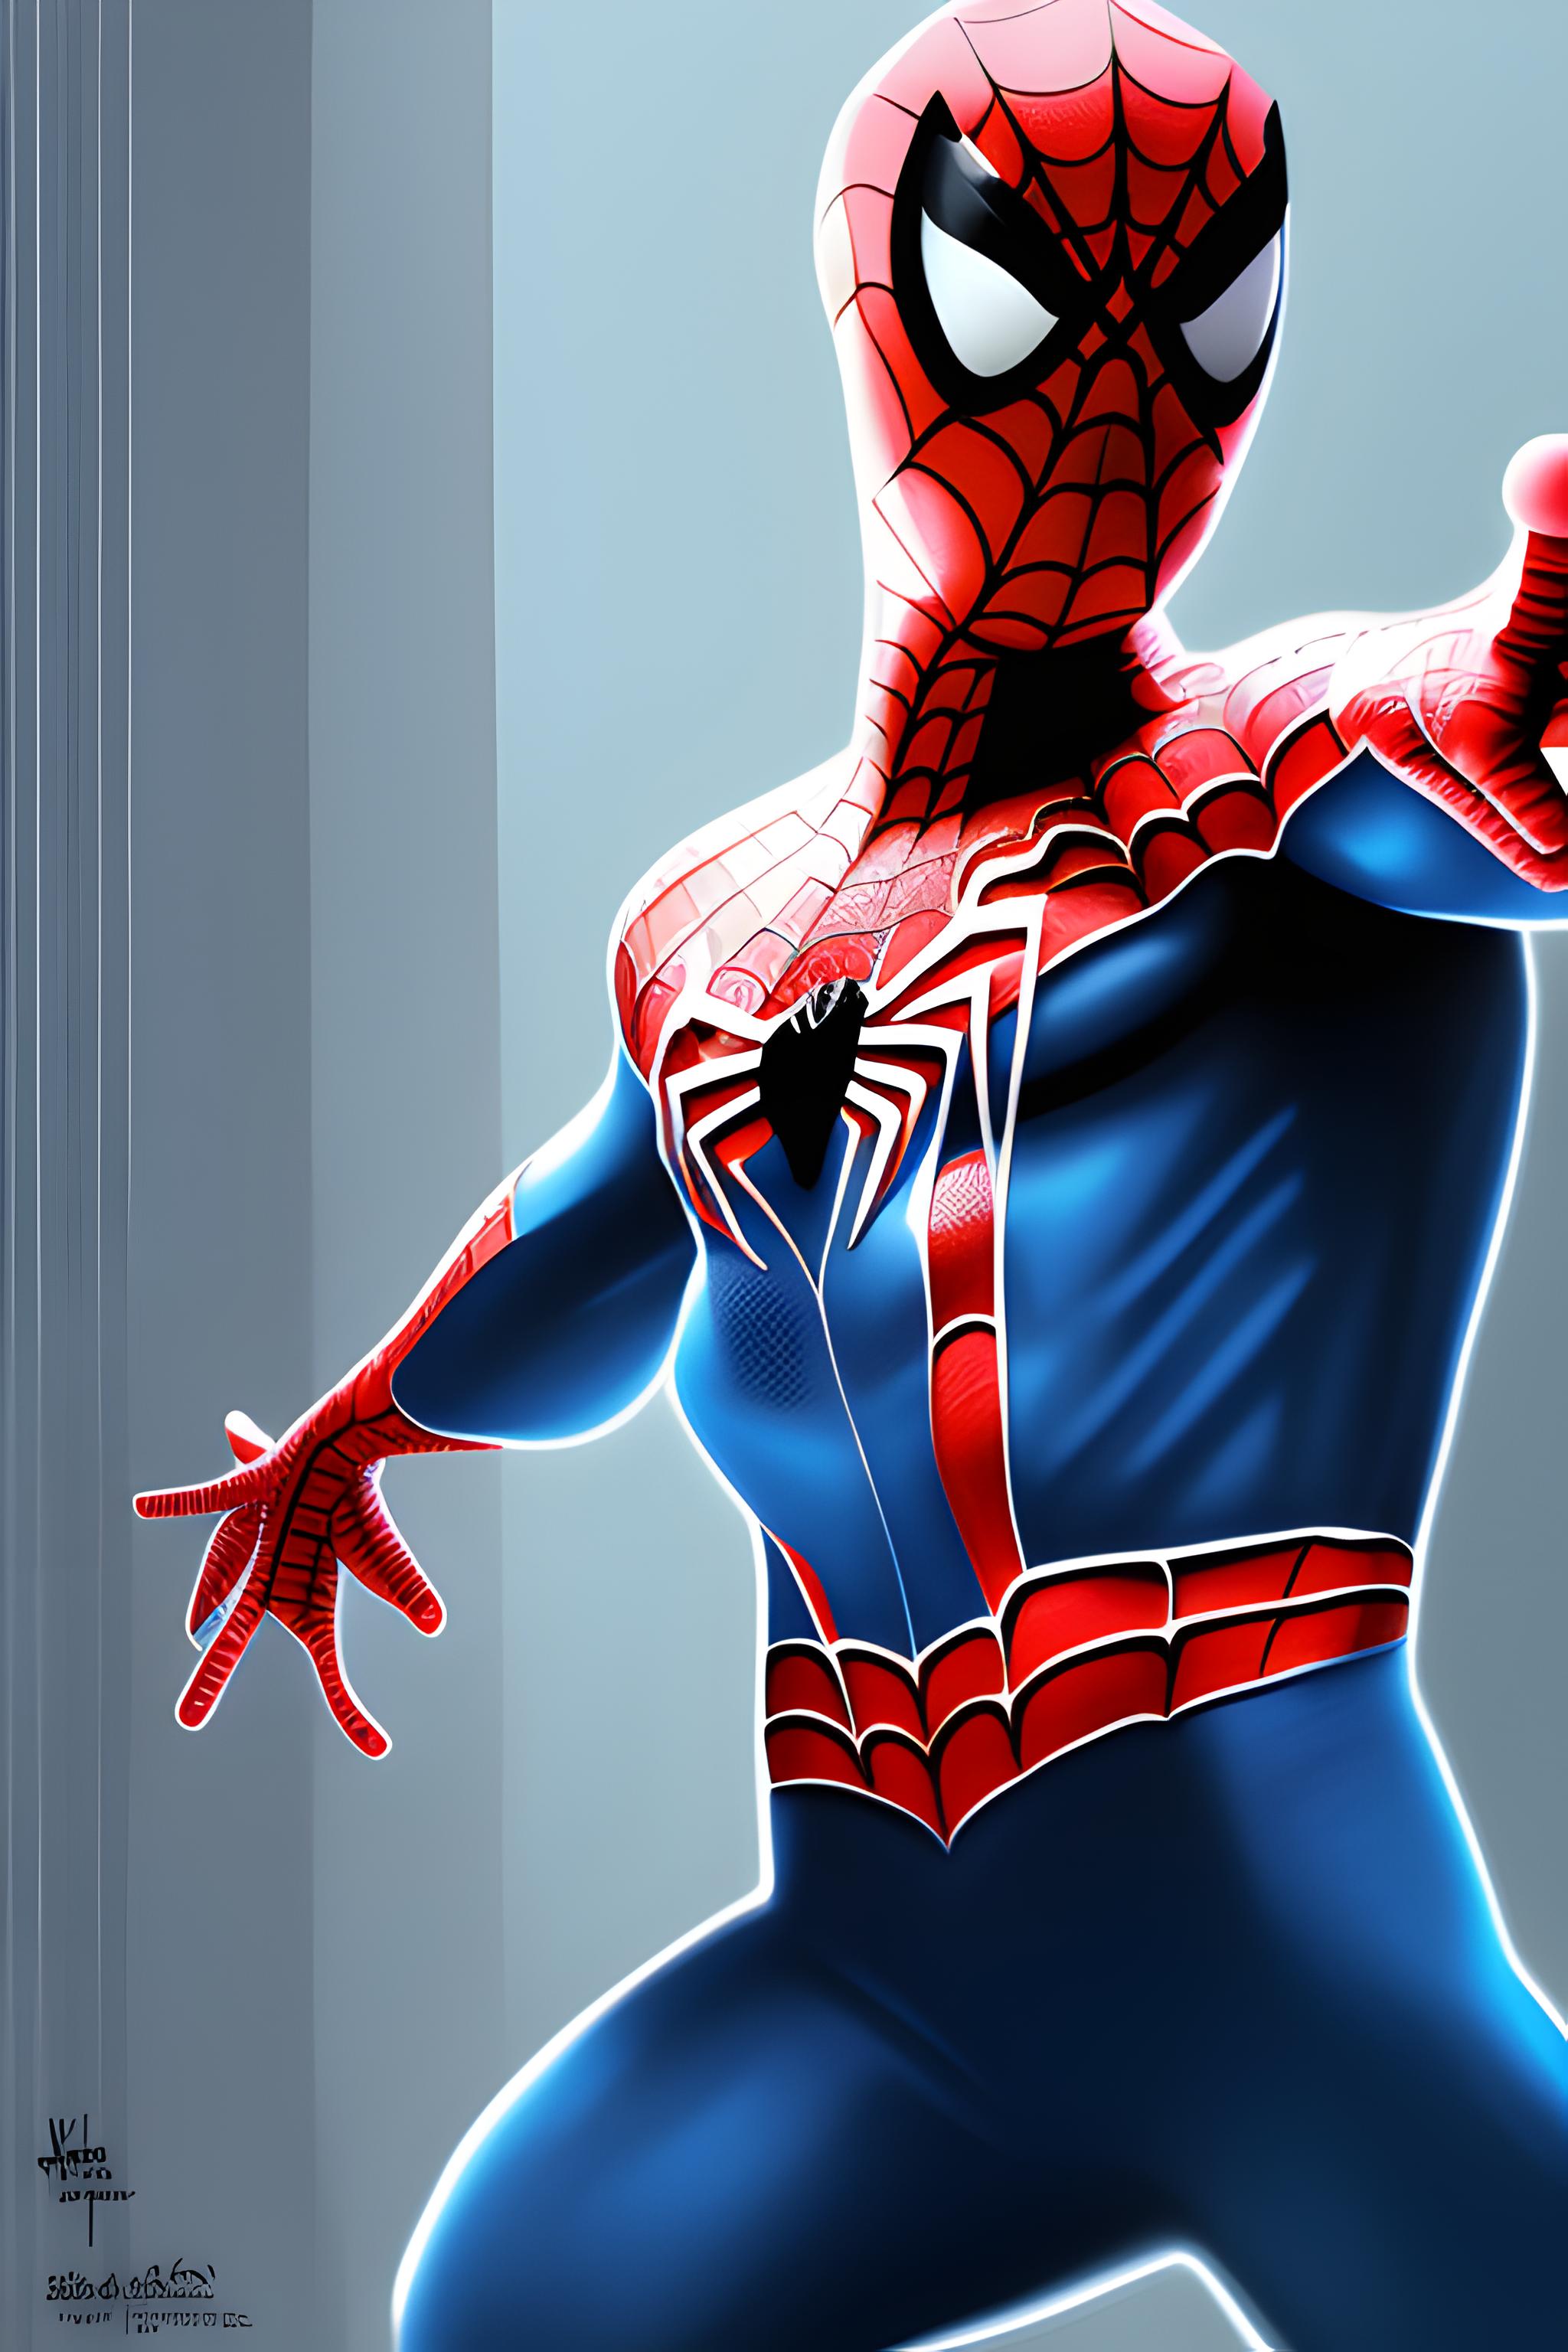 Bom tấn hoạt hình 'Spider-Man: Across the Spider-Verse' có đáng để trầm trồ?